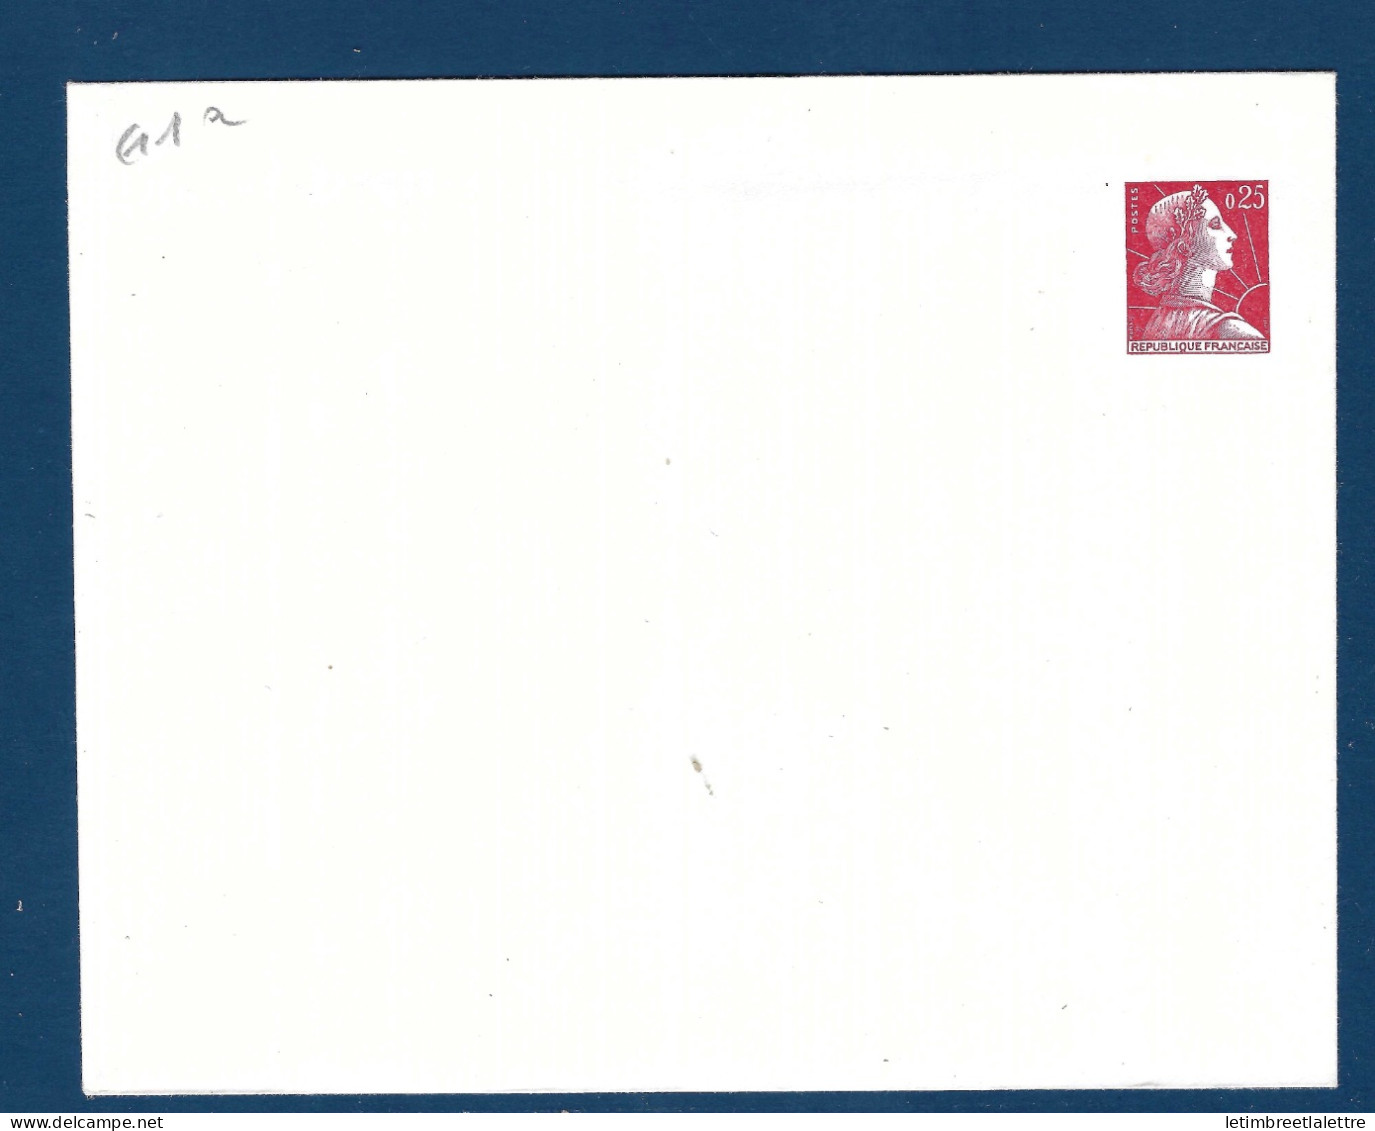 France - Entier Postal - Enveloppe G 1 A - 1960 - Standard Postcards & Stamped On Demand (before 1995)